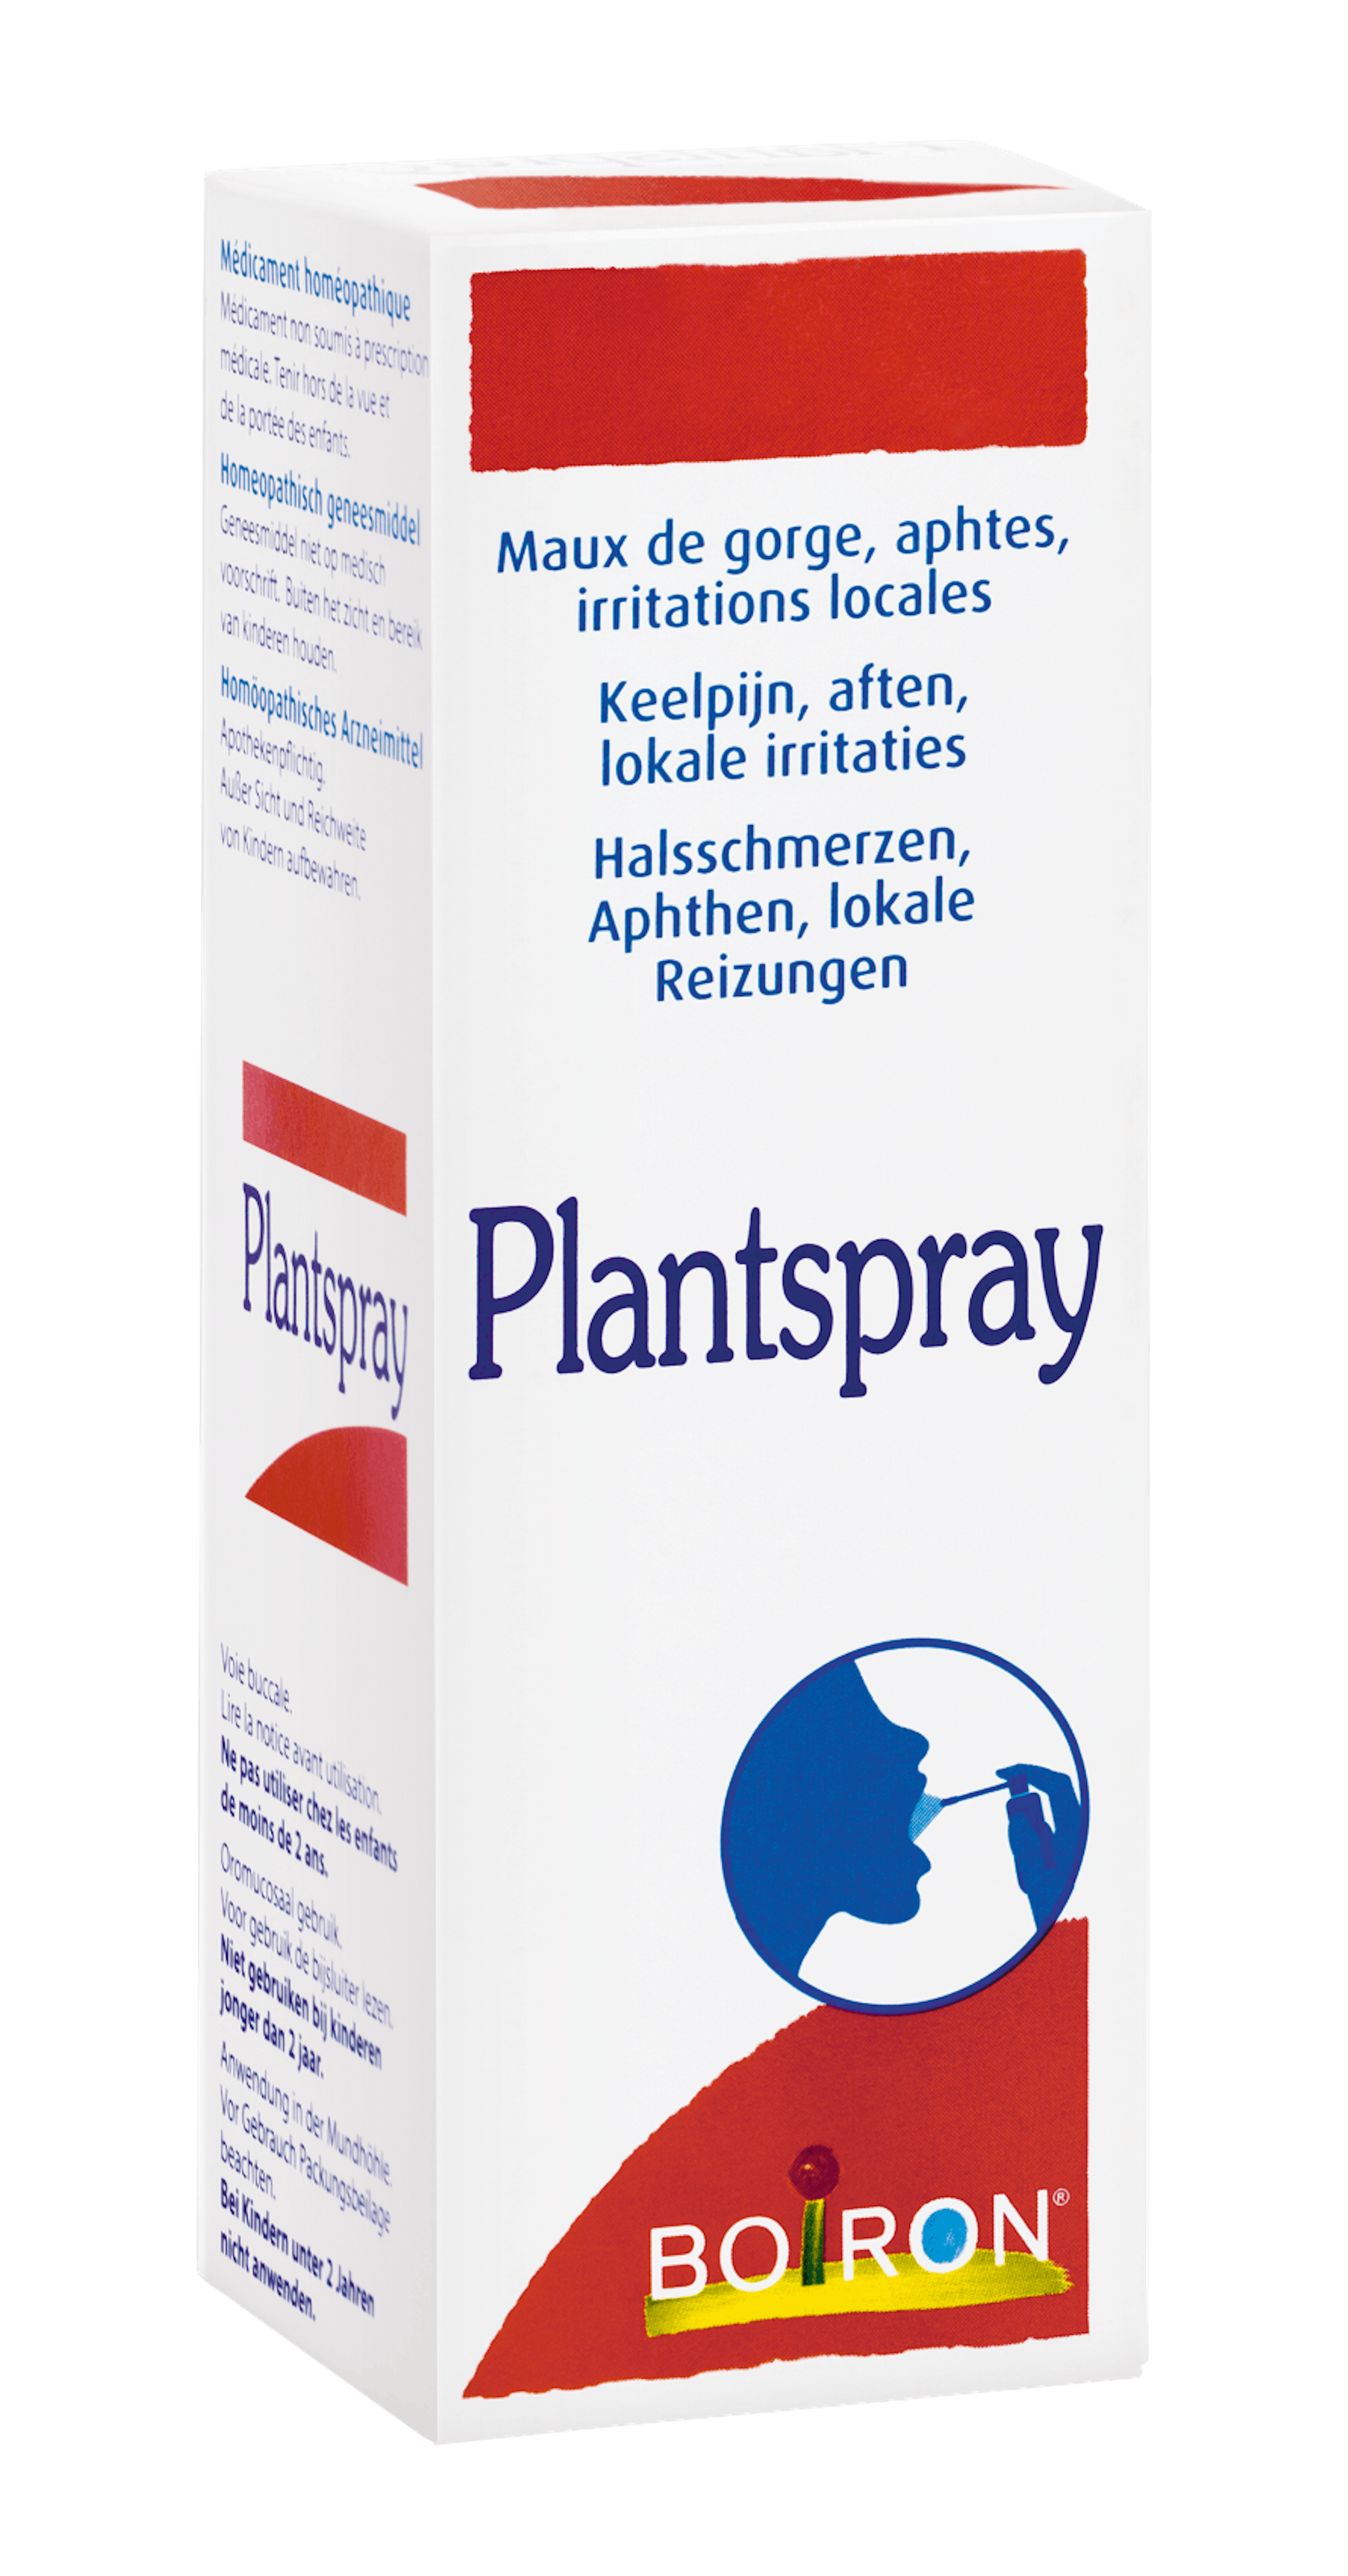 Plantspray - Nos médicaments homéopathiques spécialités - Maux de gorge - Aphtes - Irritations locales